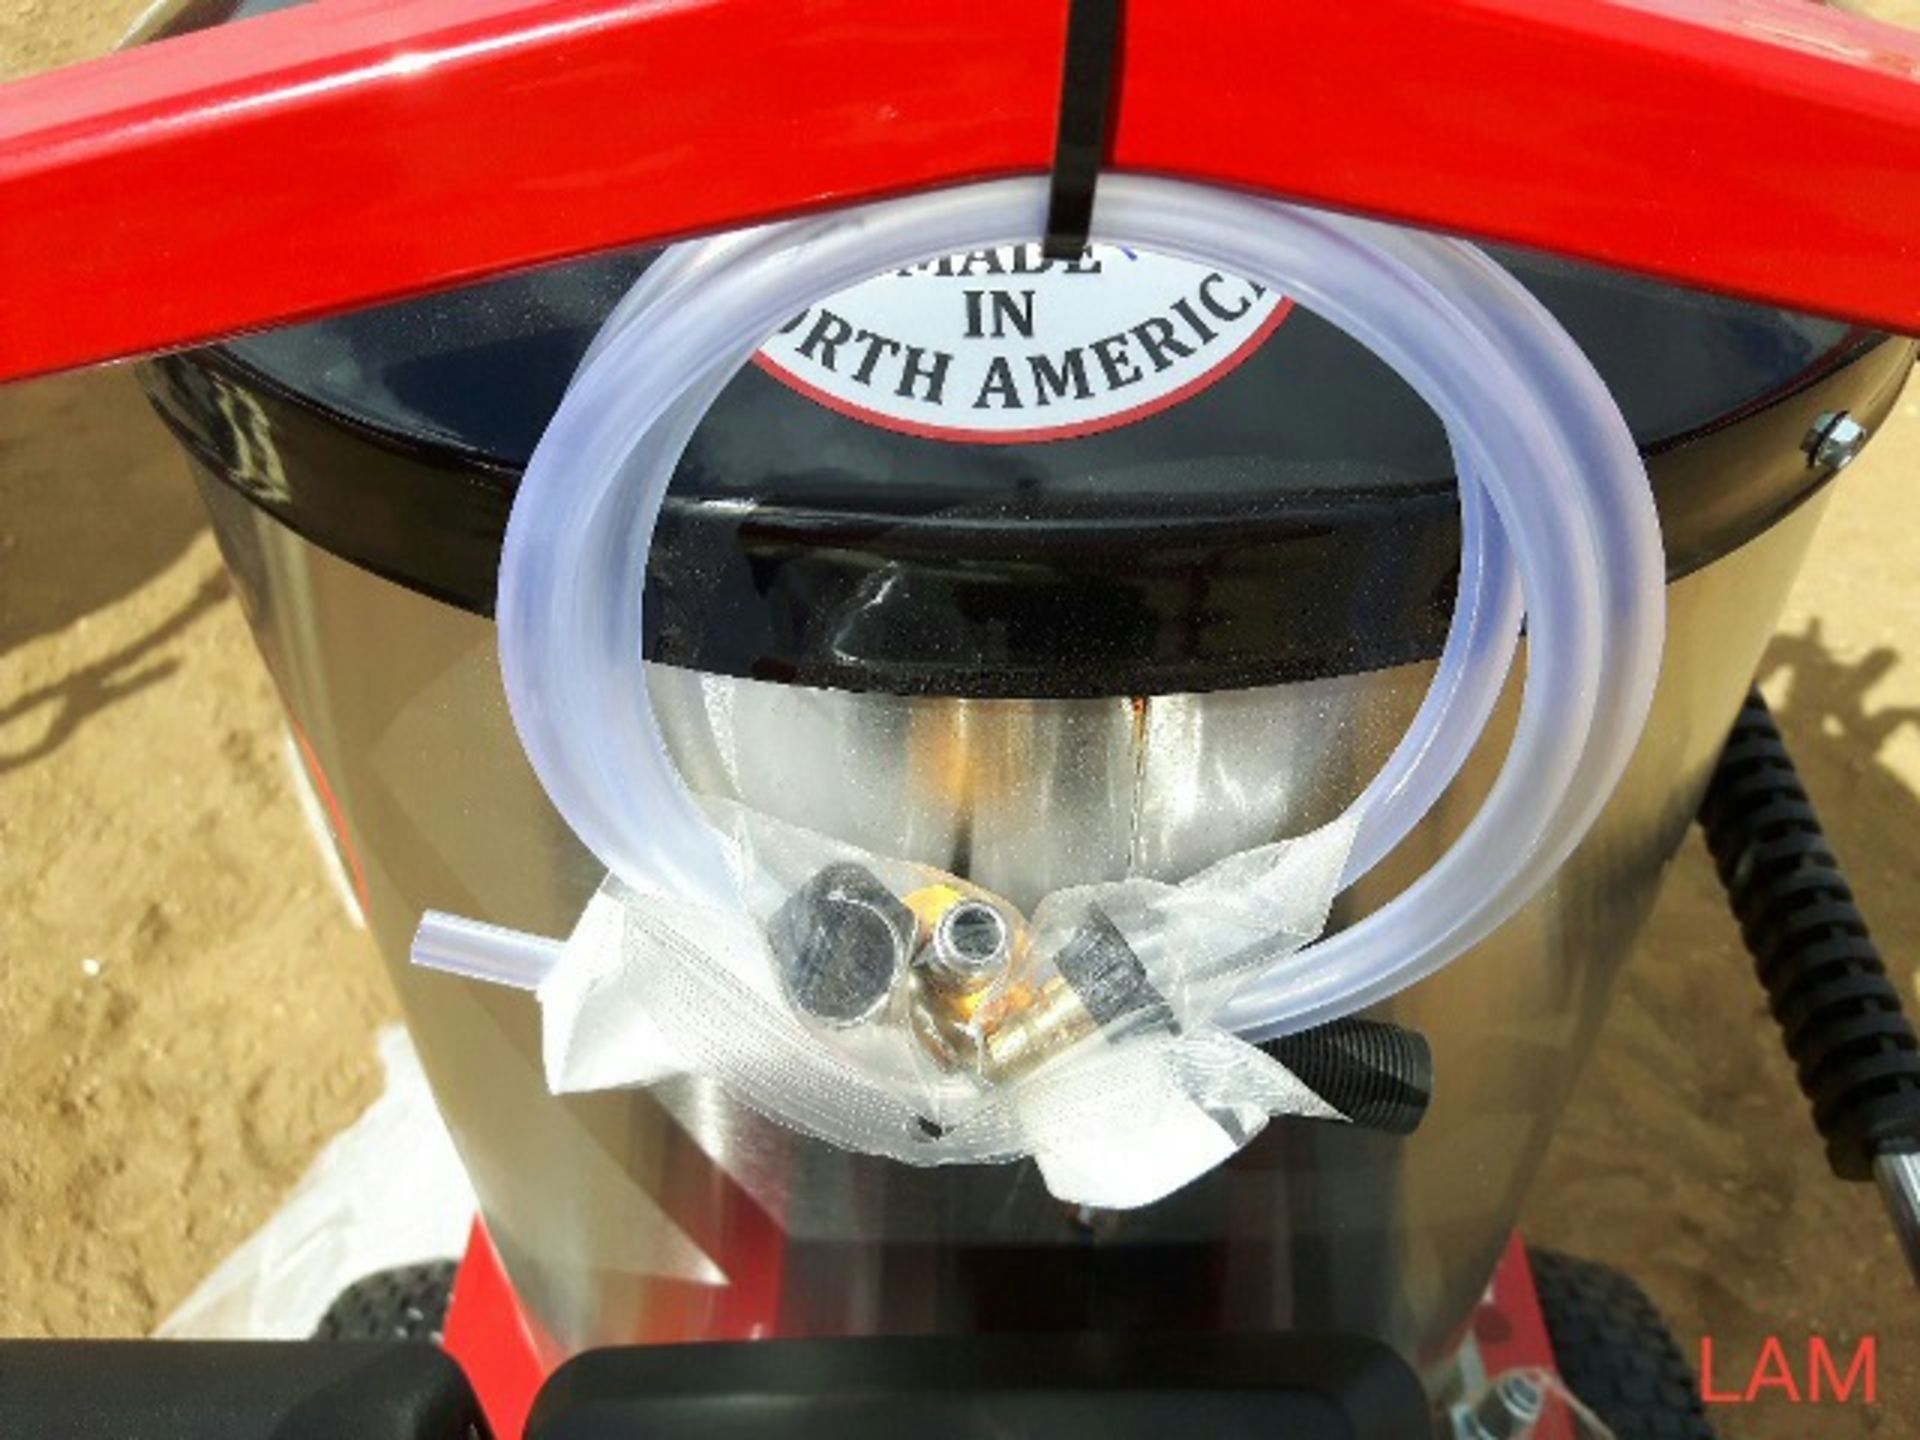 Easy Kleen Diesel Fired Hot Water Pressure Washer Magnum 4000 Series Gold 15 hp elec start eng, 30FT - Bild 4 aus 4